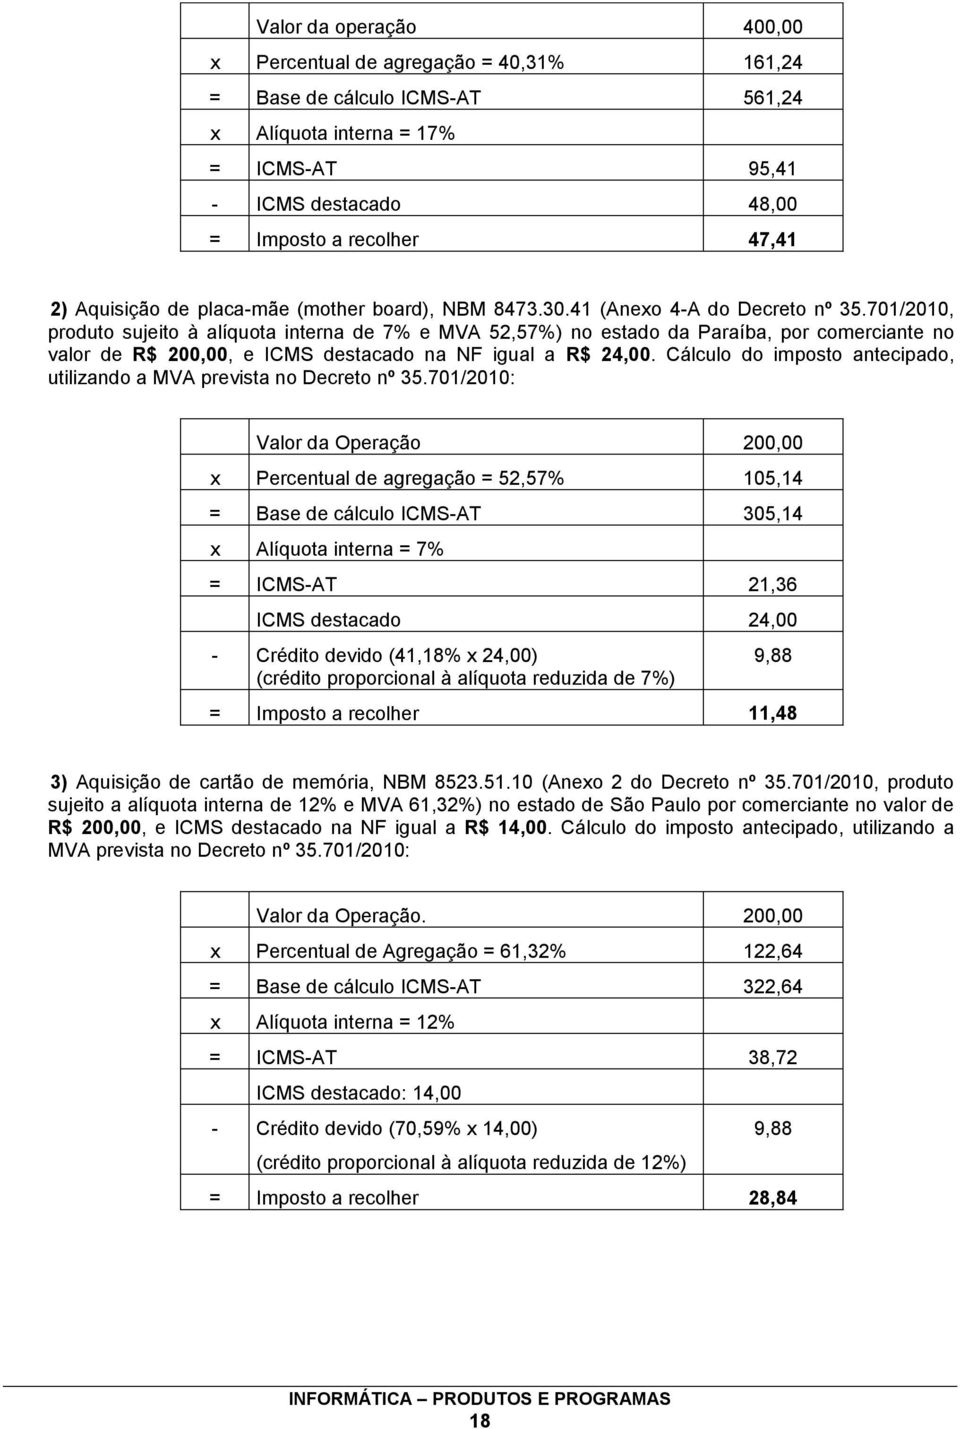 701/2010, produto sujeito à alíquota interna de 7% e MVA 52,57%) no estado da Paraíba, por comerciante no valor de R$ 200,00, e ICMS destacado na NF igual a R$ 24,00.